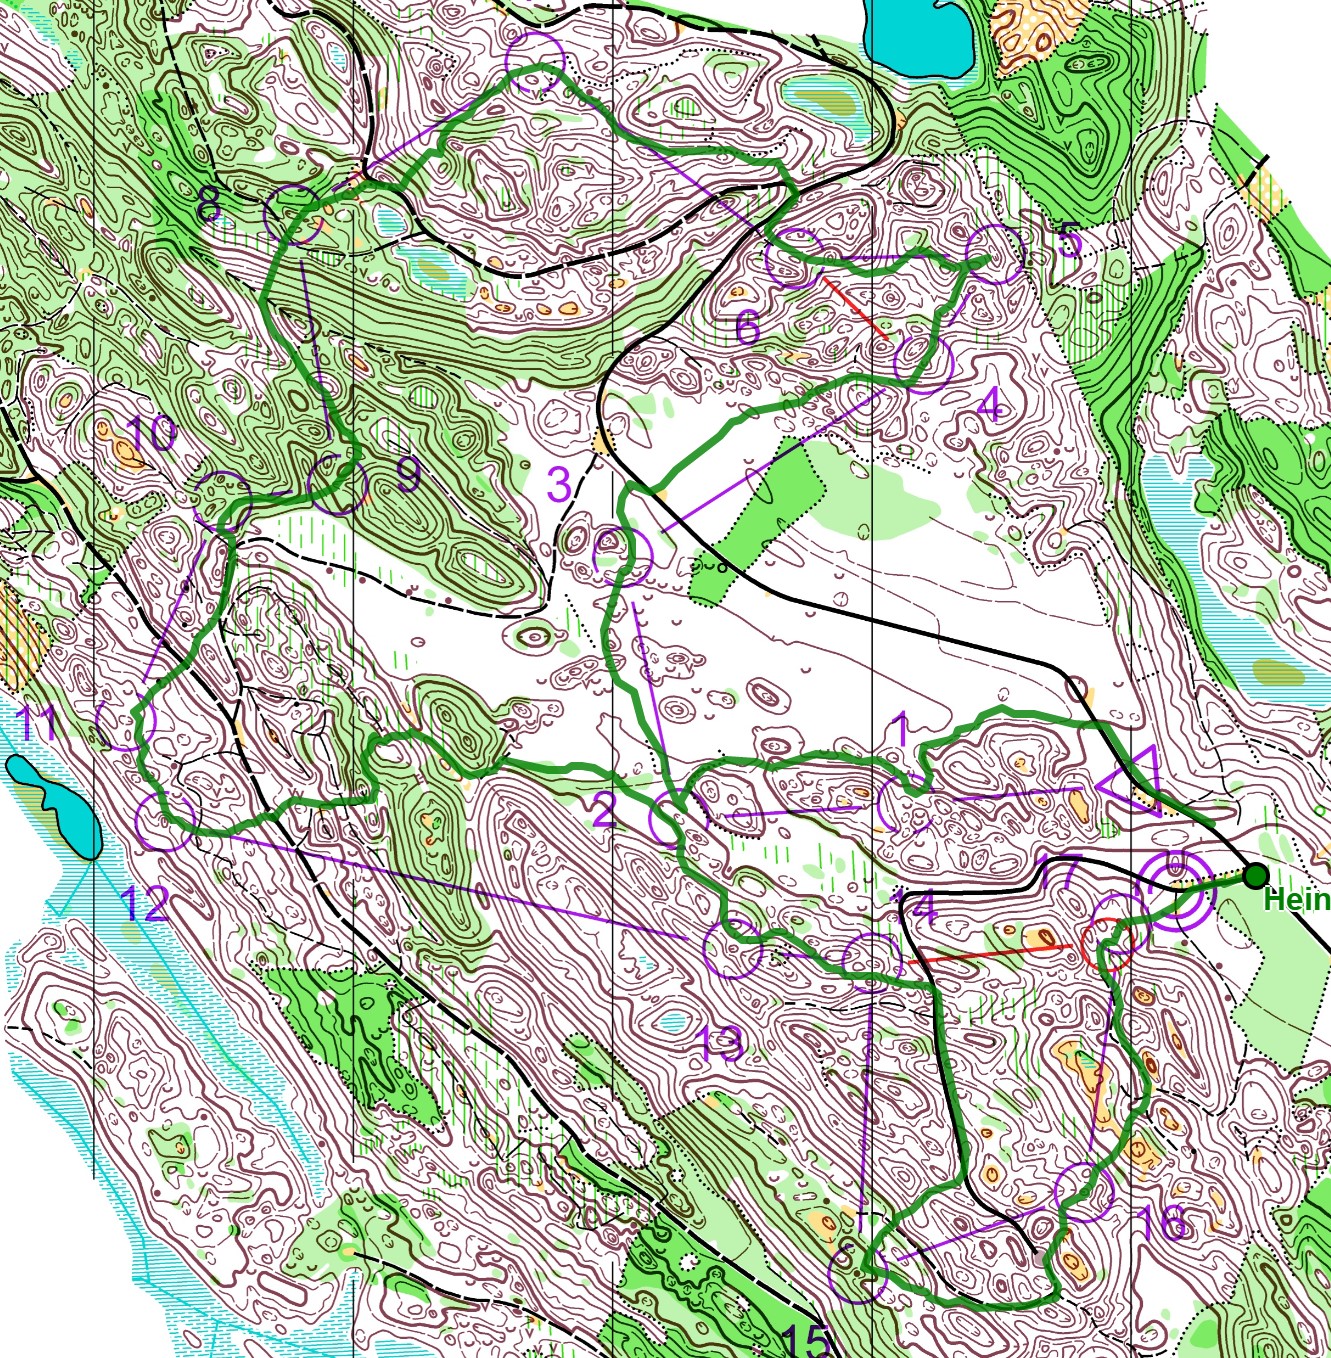 Kuikkalampi Open (15-05-2021)